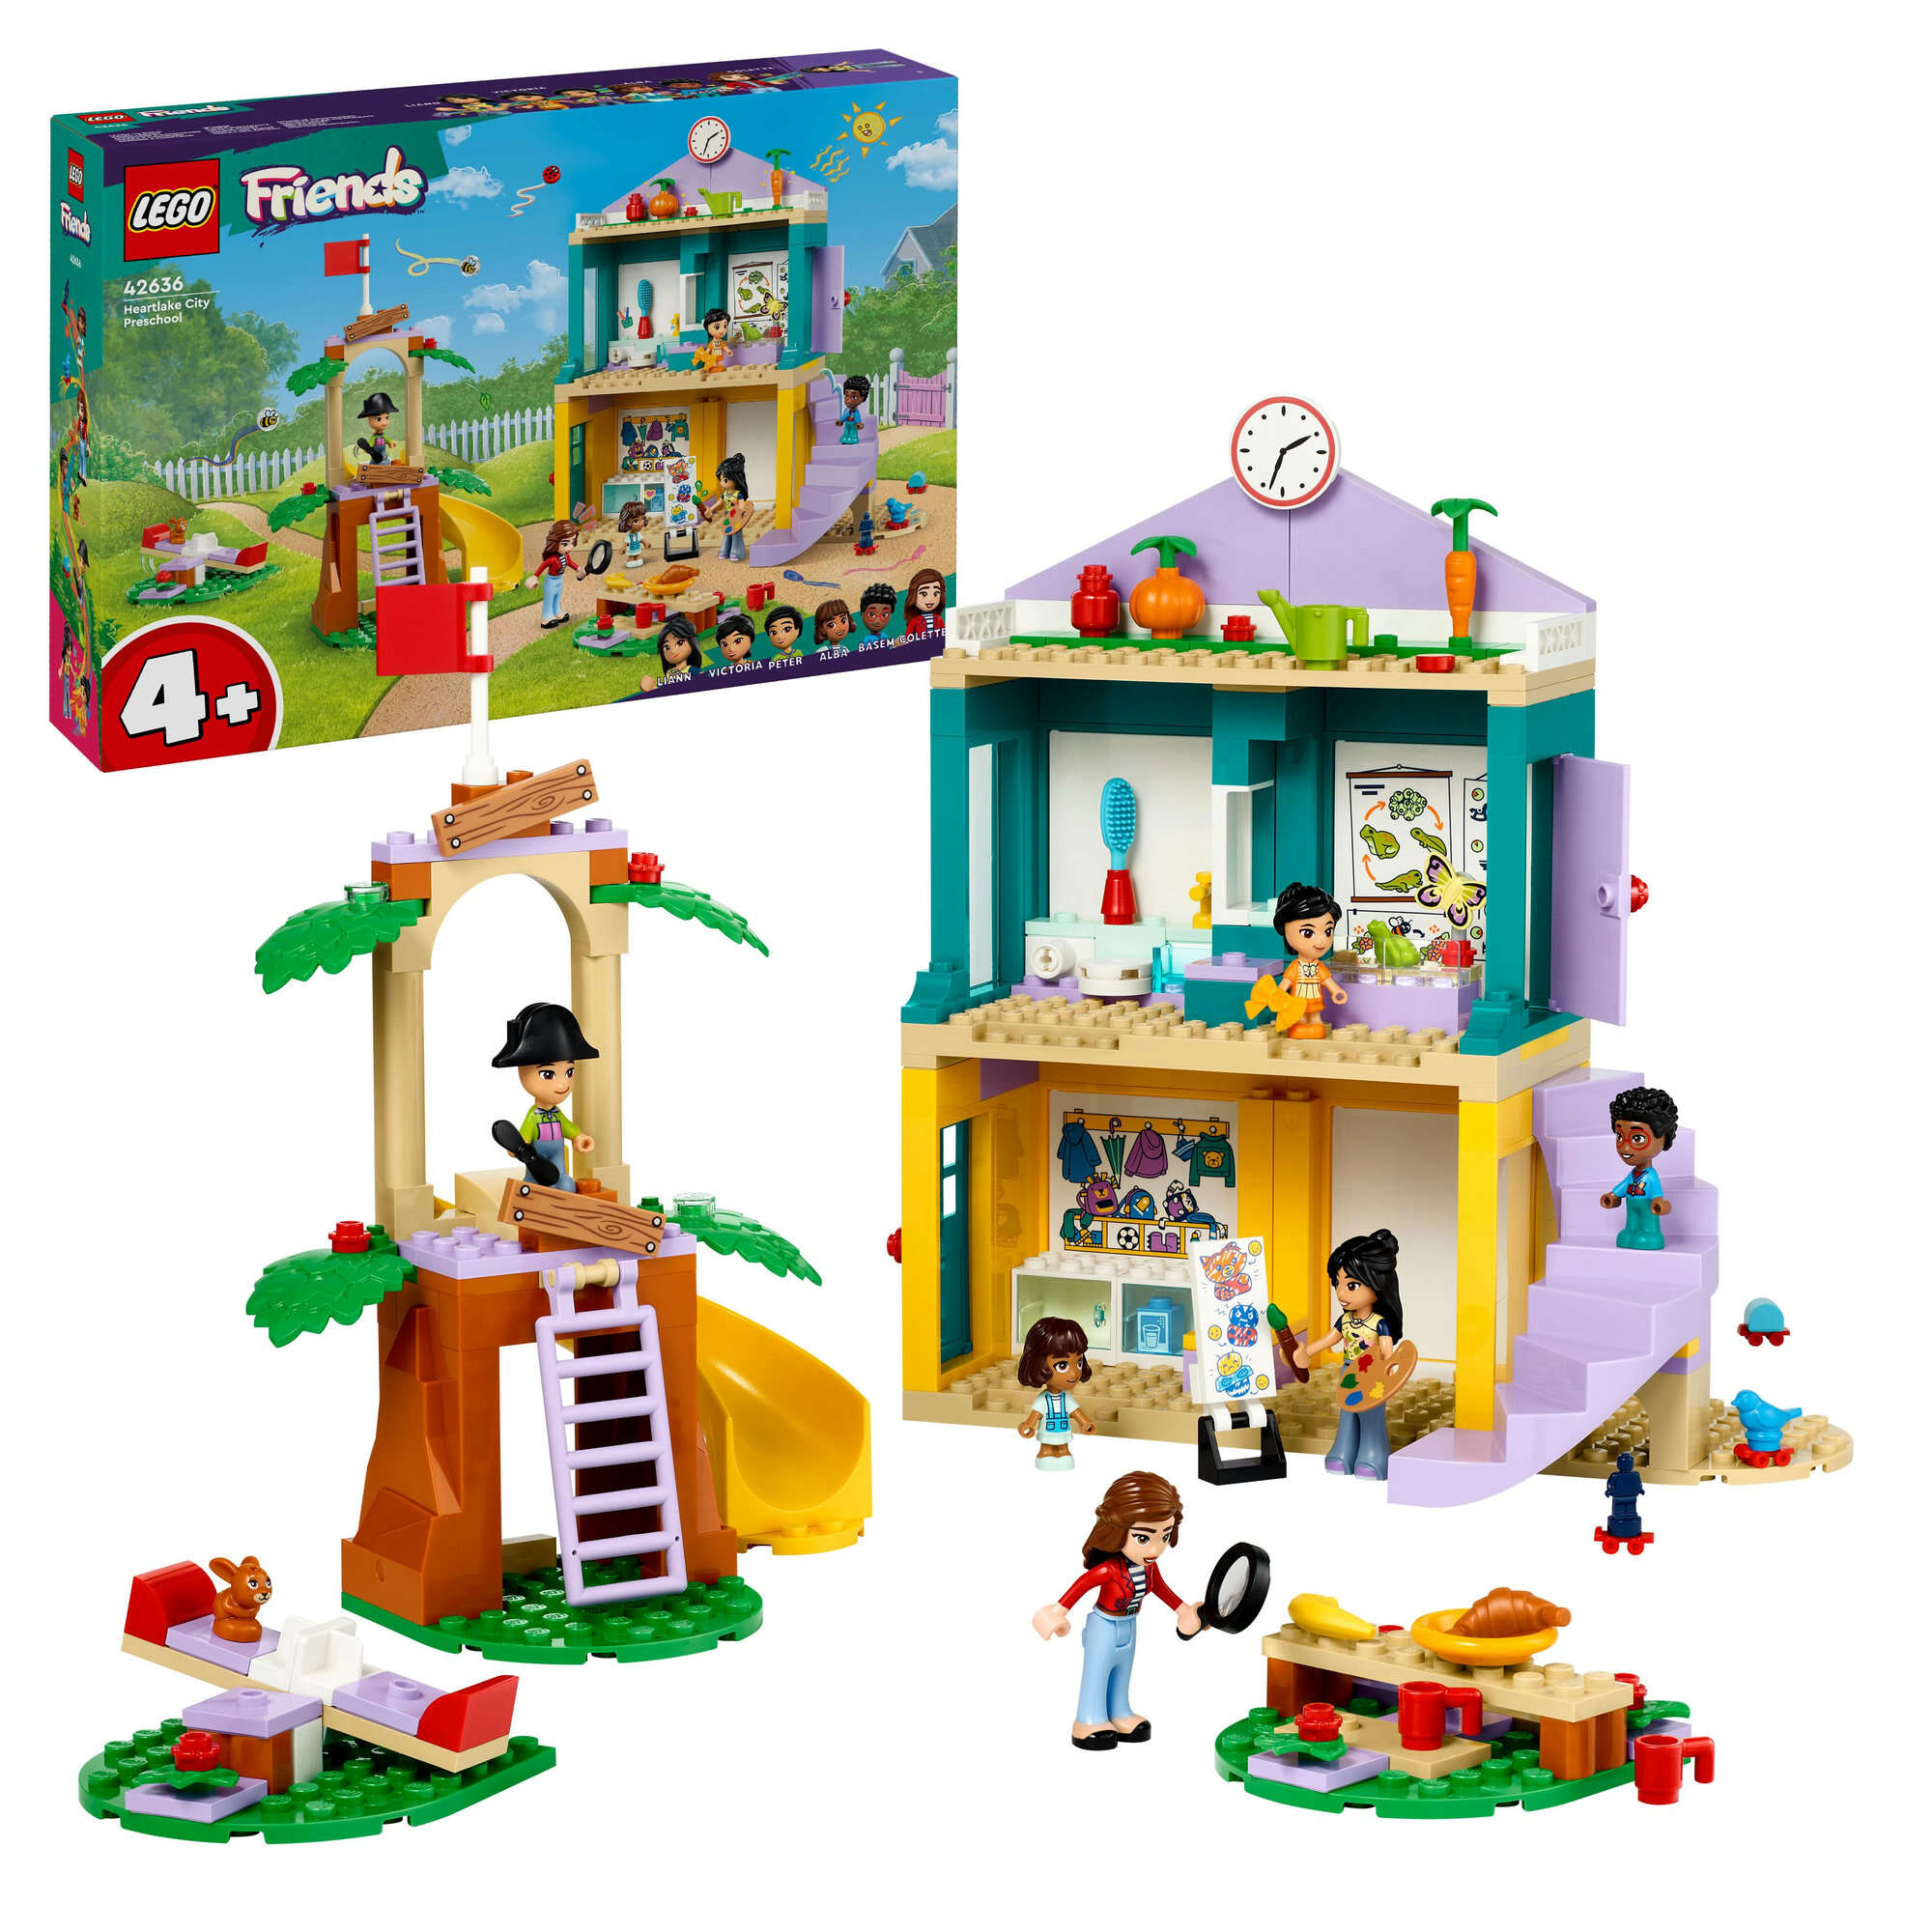 LEGO 42636 Friends Heartlake City Kindergarten, 2 Spielfiguren, 4 Mikro-Figuren